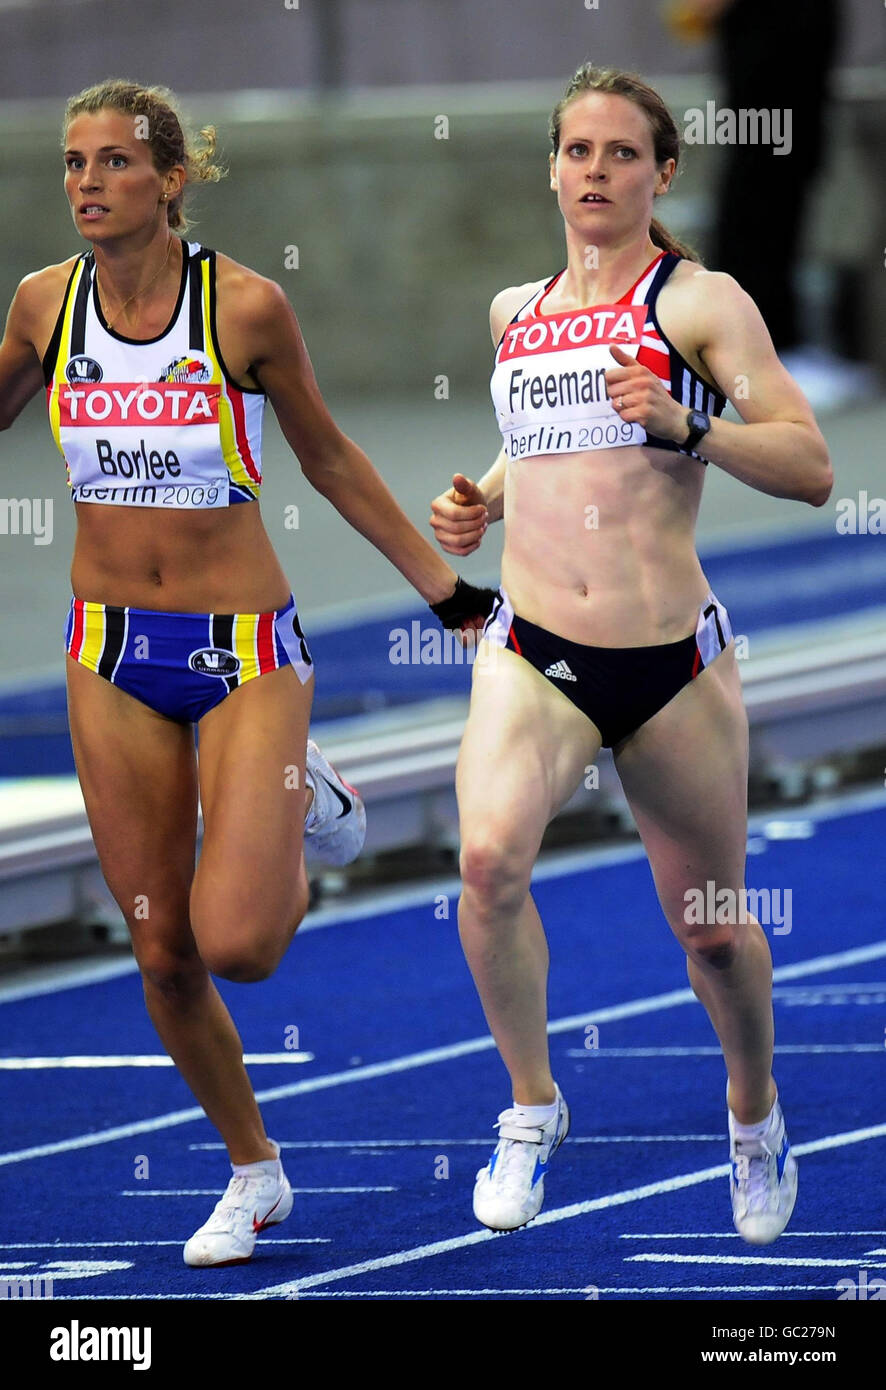 Emily Freeman, de Grande-Bretagne, se qualifie pour la prochaine manche du 200m féminin lors des Championnats du monde de l'IAAF à l'Olympiastadion, Berlin. Banque D'Images